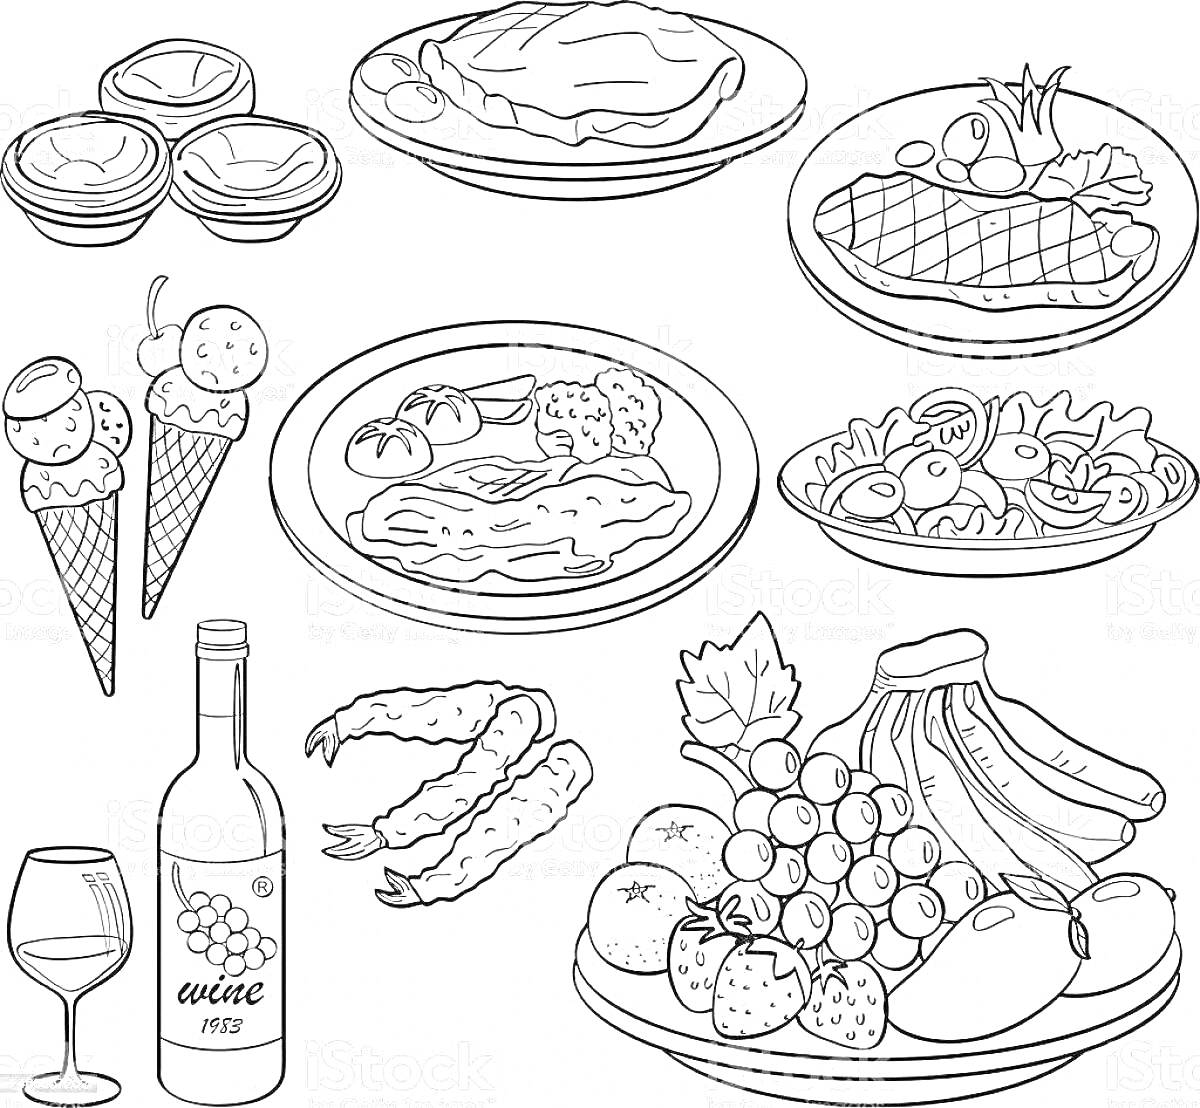 стол с пирогами, блинами, стейком, курицей, салатом, мороженым, бутылкой вина и бокалом, креветками, тарелкой с фруктами (виноград, бананы, клубника, апельсин)